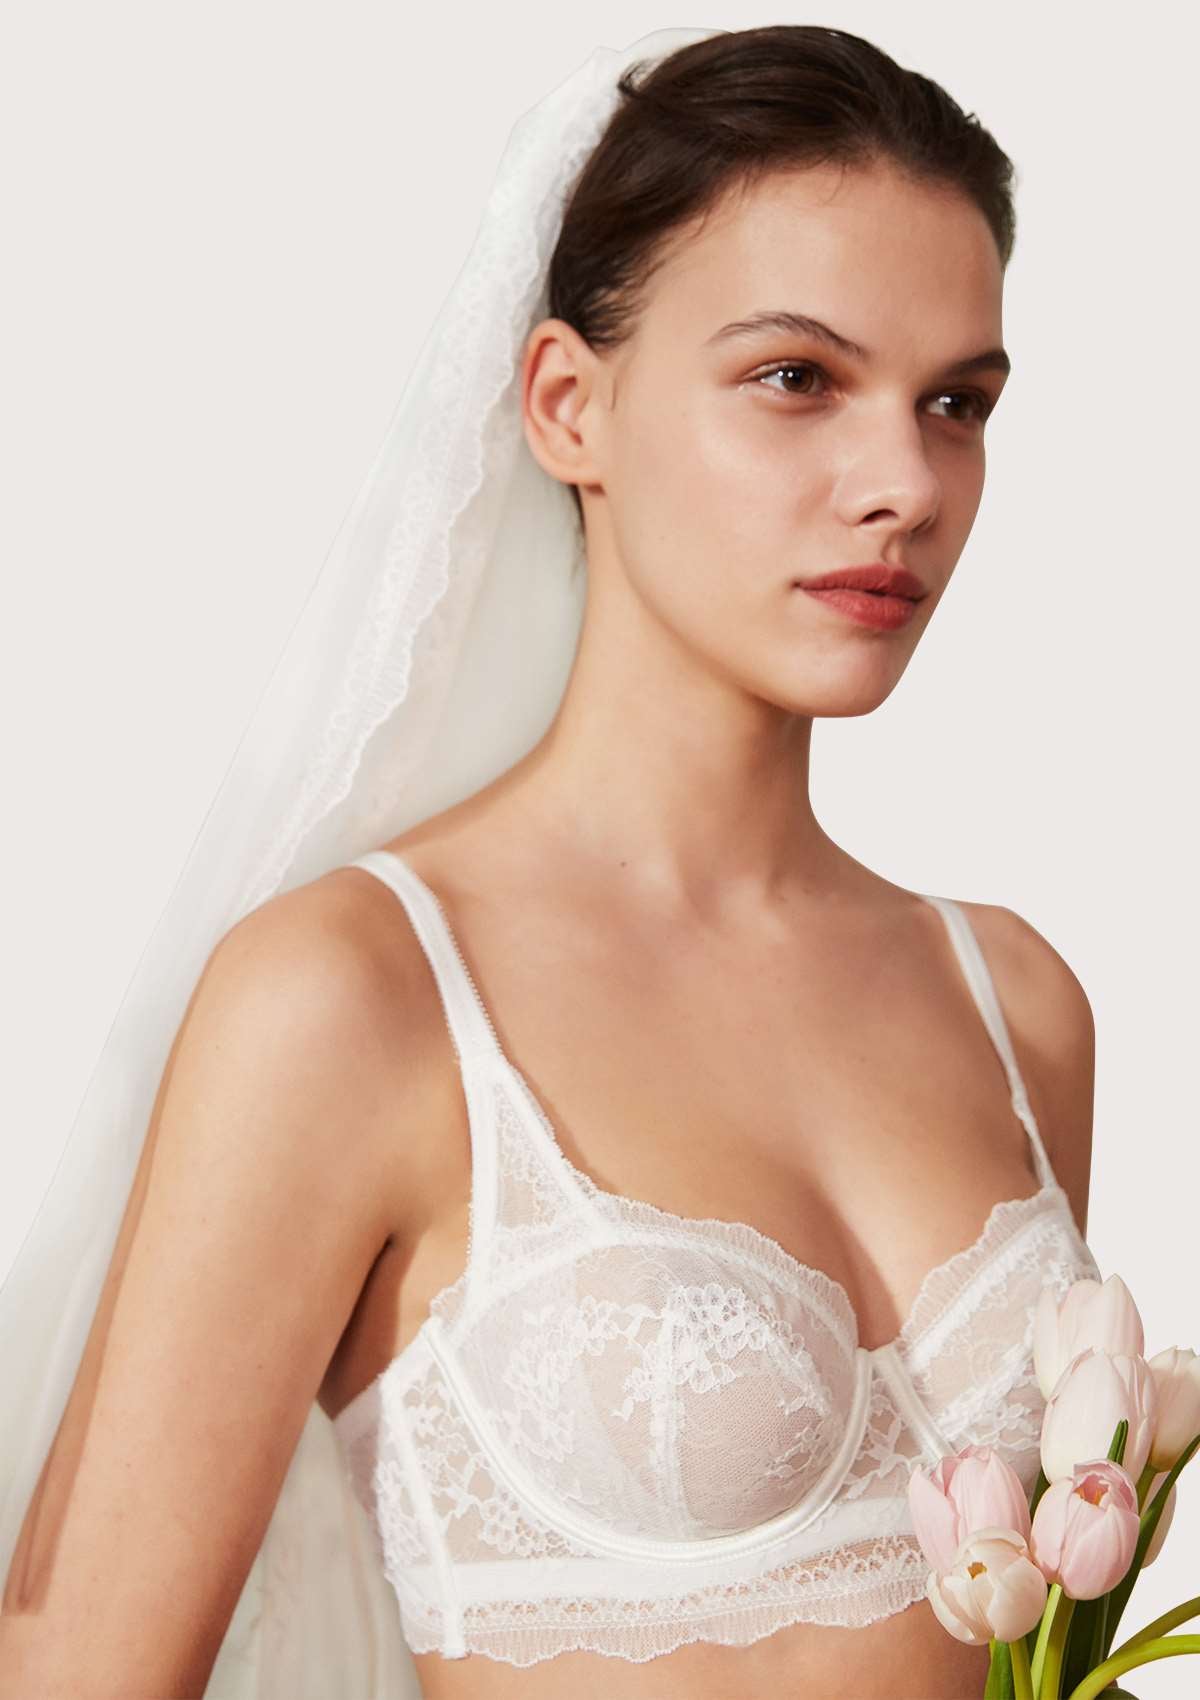 HSIA Floral Lace Unlined Bridal Romantic Balconette Bra Panty Set  - White / 36 / D